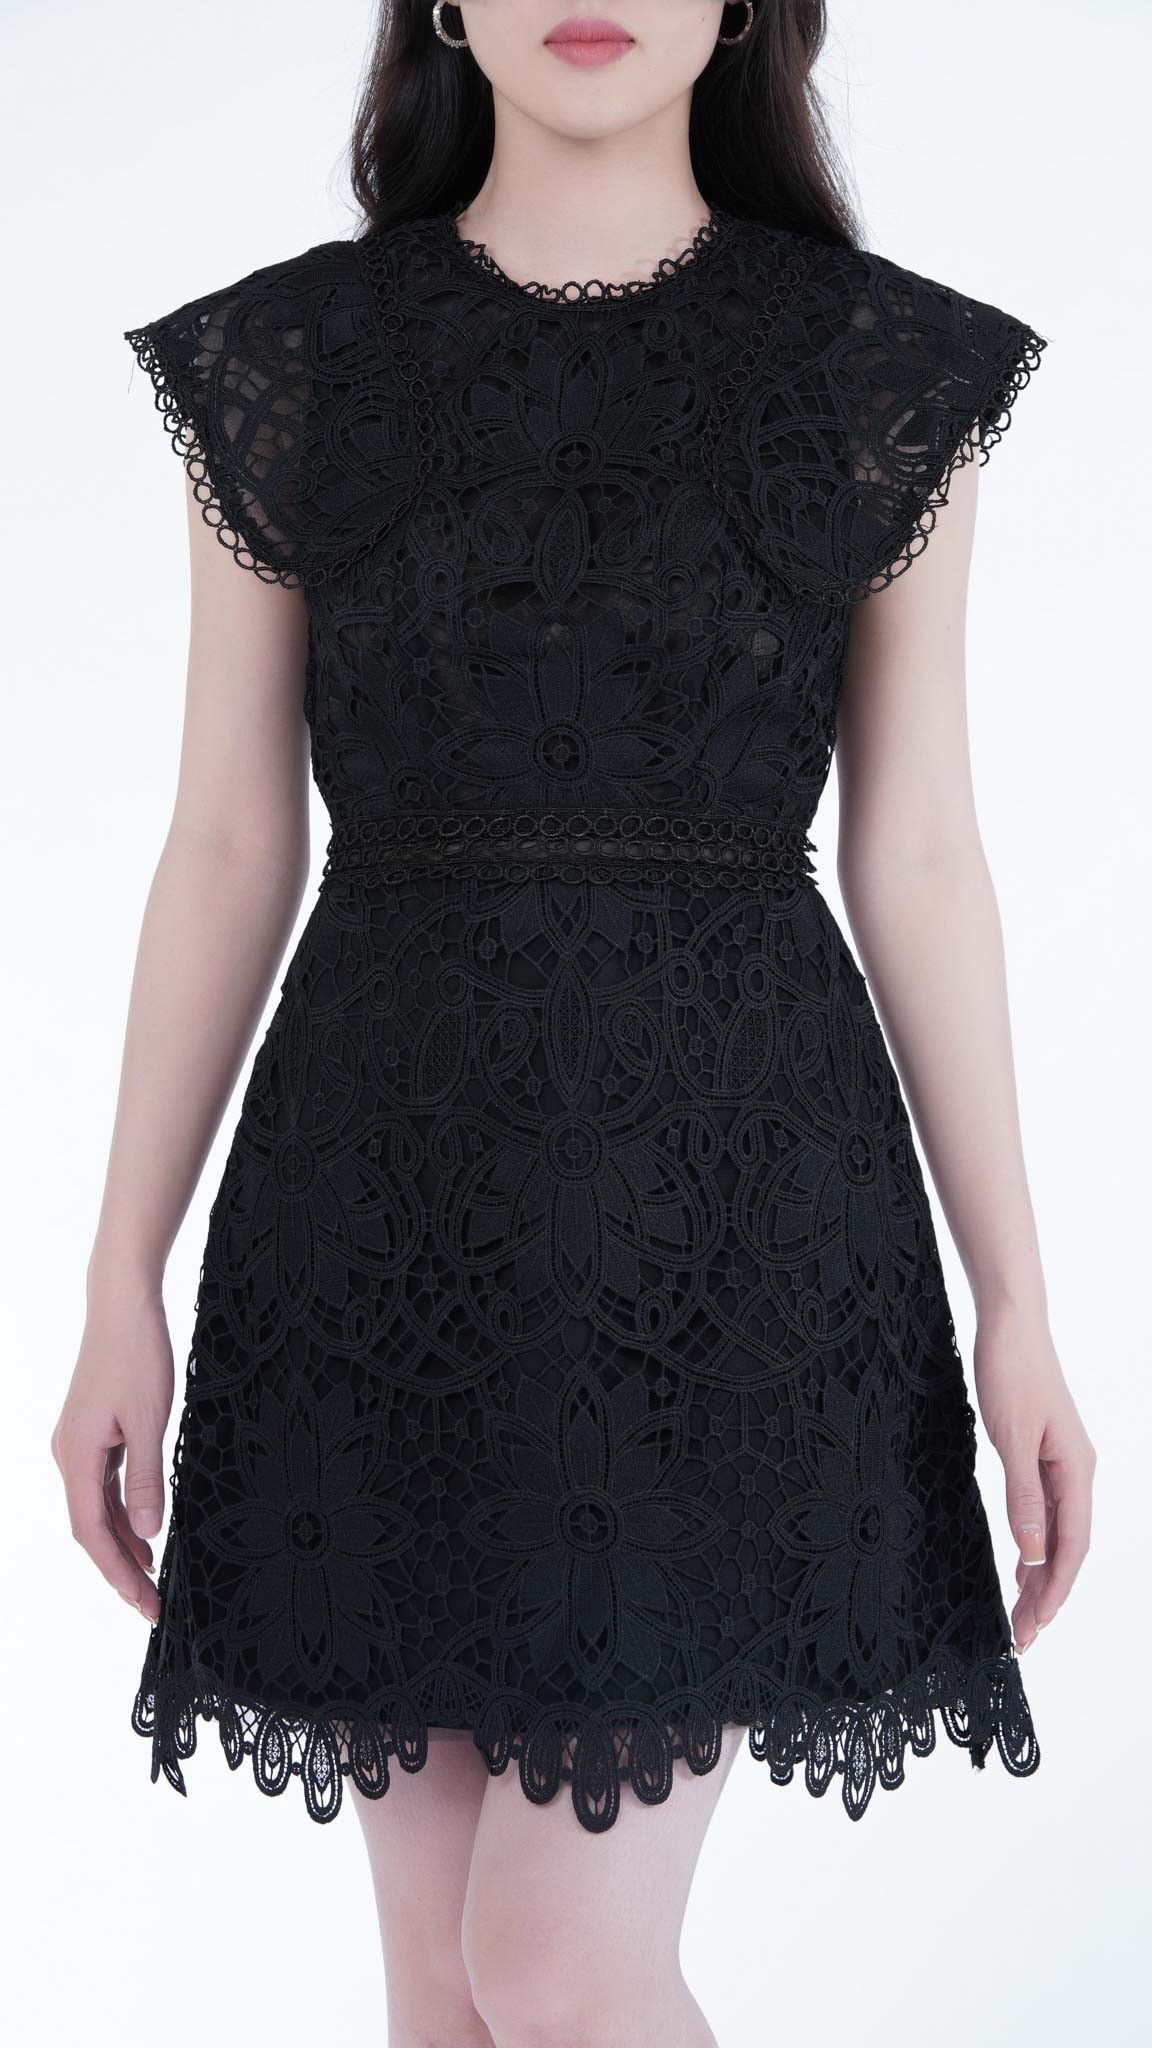 Đầm ren xoè tay loe thiết kế 2 lớp có đệm ngực mặc dc 2 kiểu đều xênh lun ạ  😘 2 màu: be, đen ▪️380.00... | Instagram